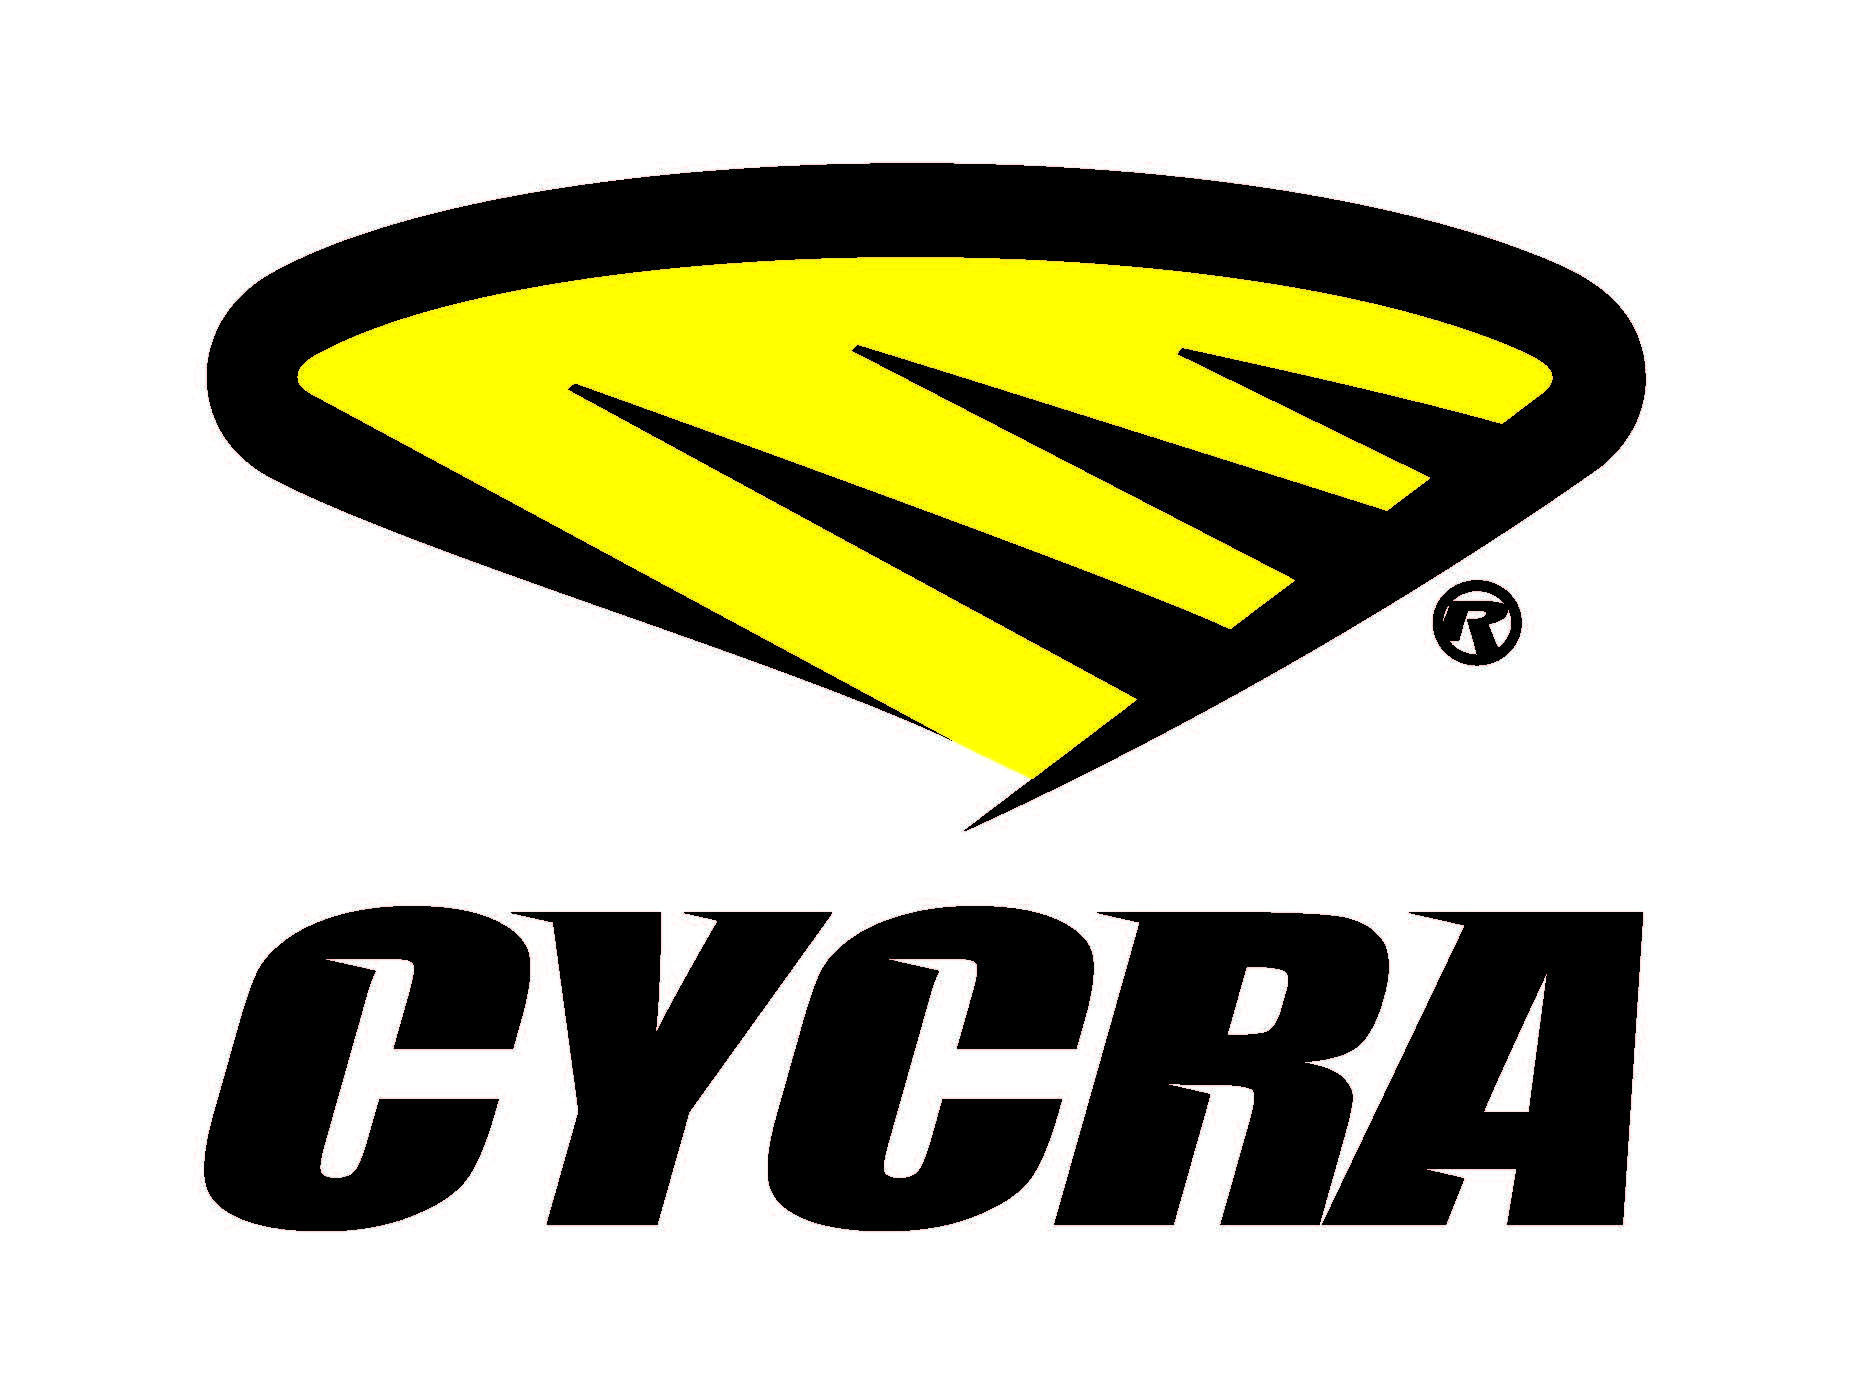 cycra.jpg